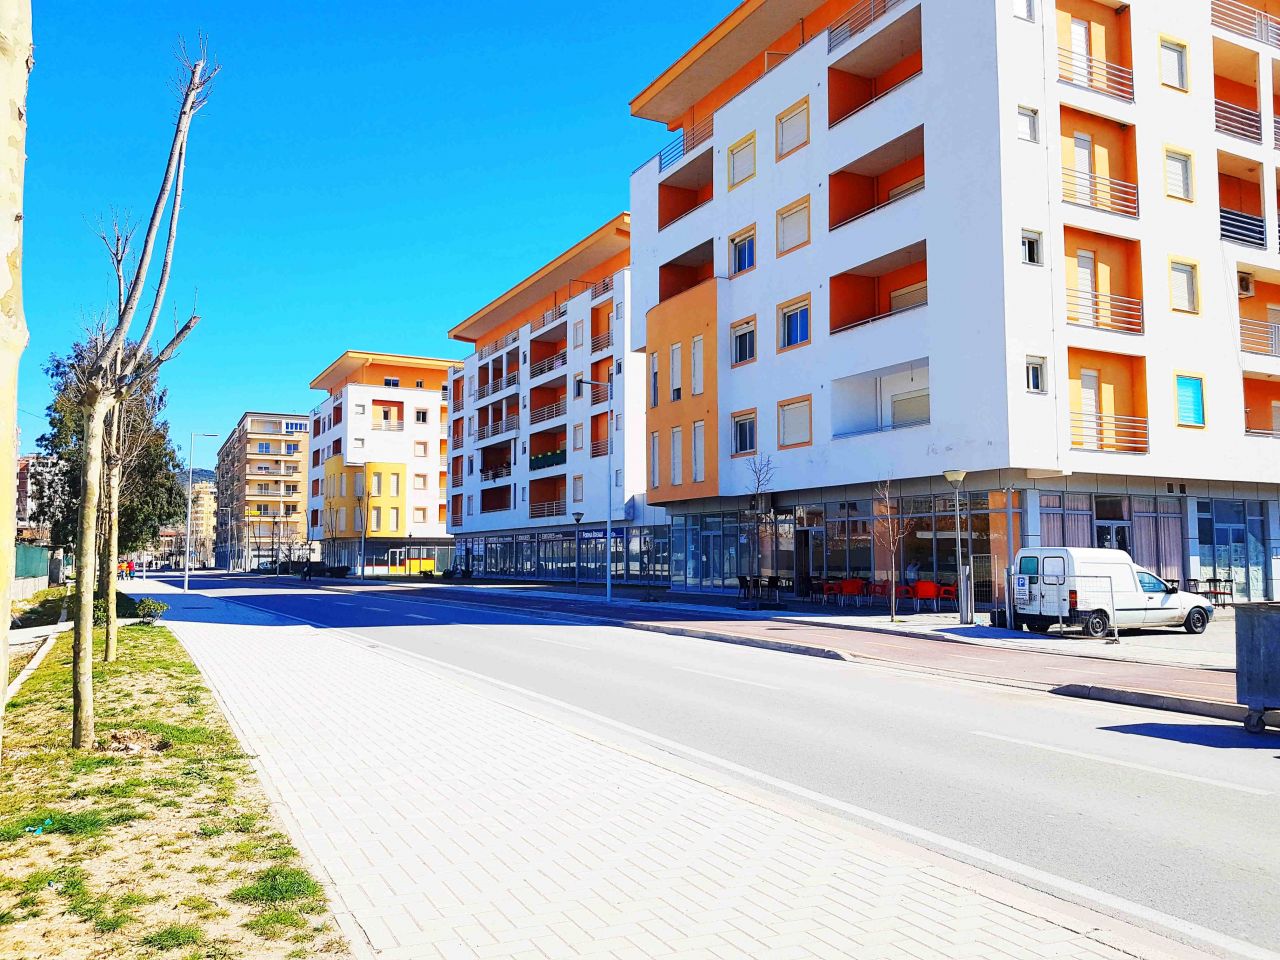 Appartamenti di vacanze in Albania, nella bellissima citta' costiera di Valona. 